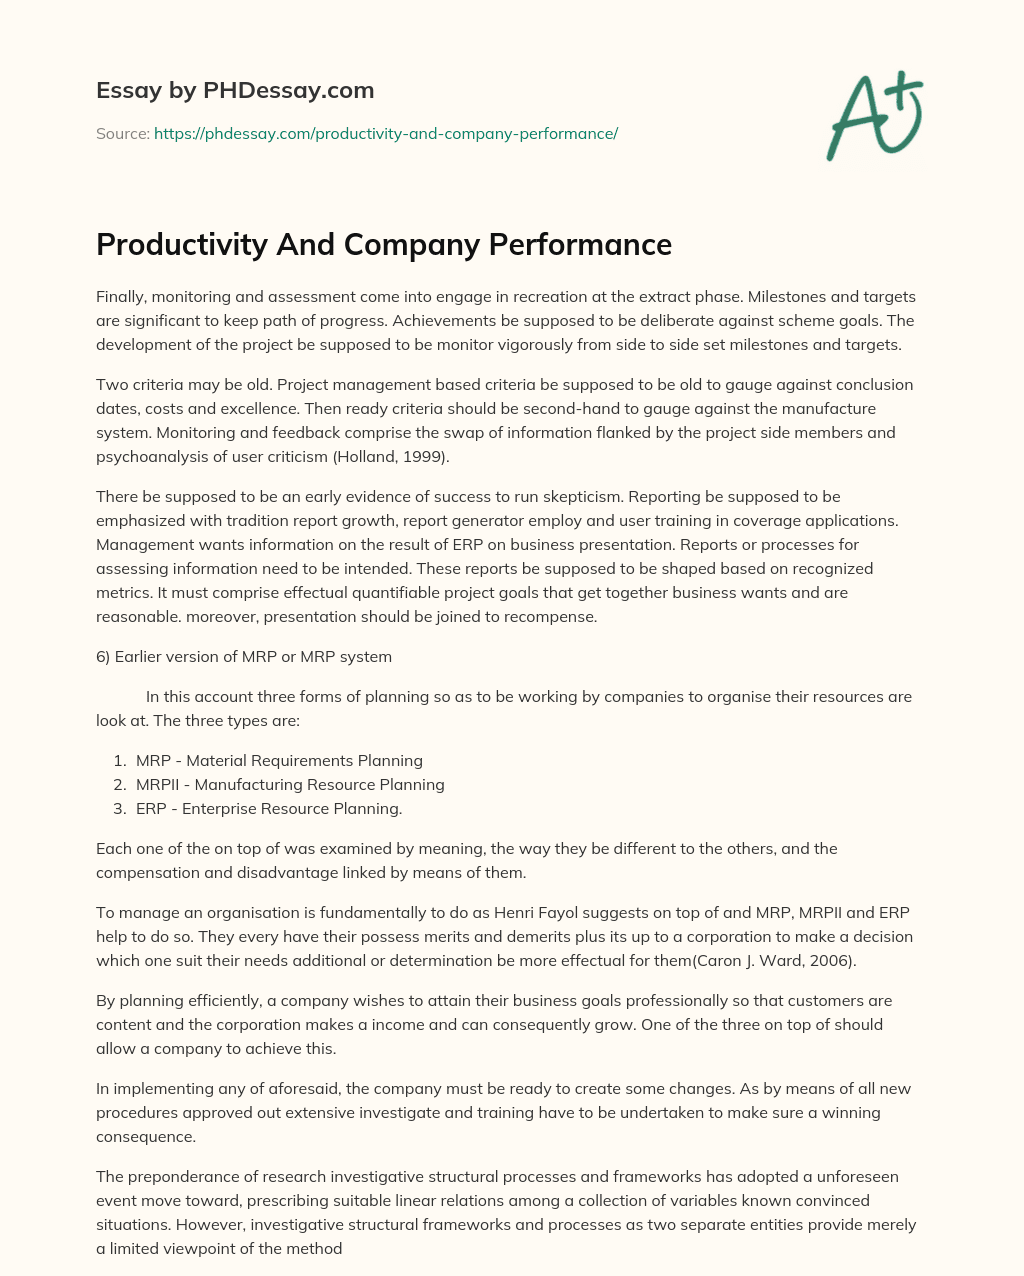 Productivity And Company Performance essay